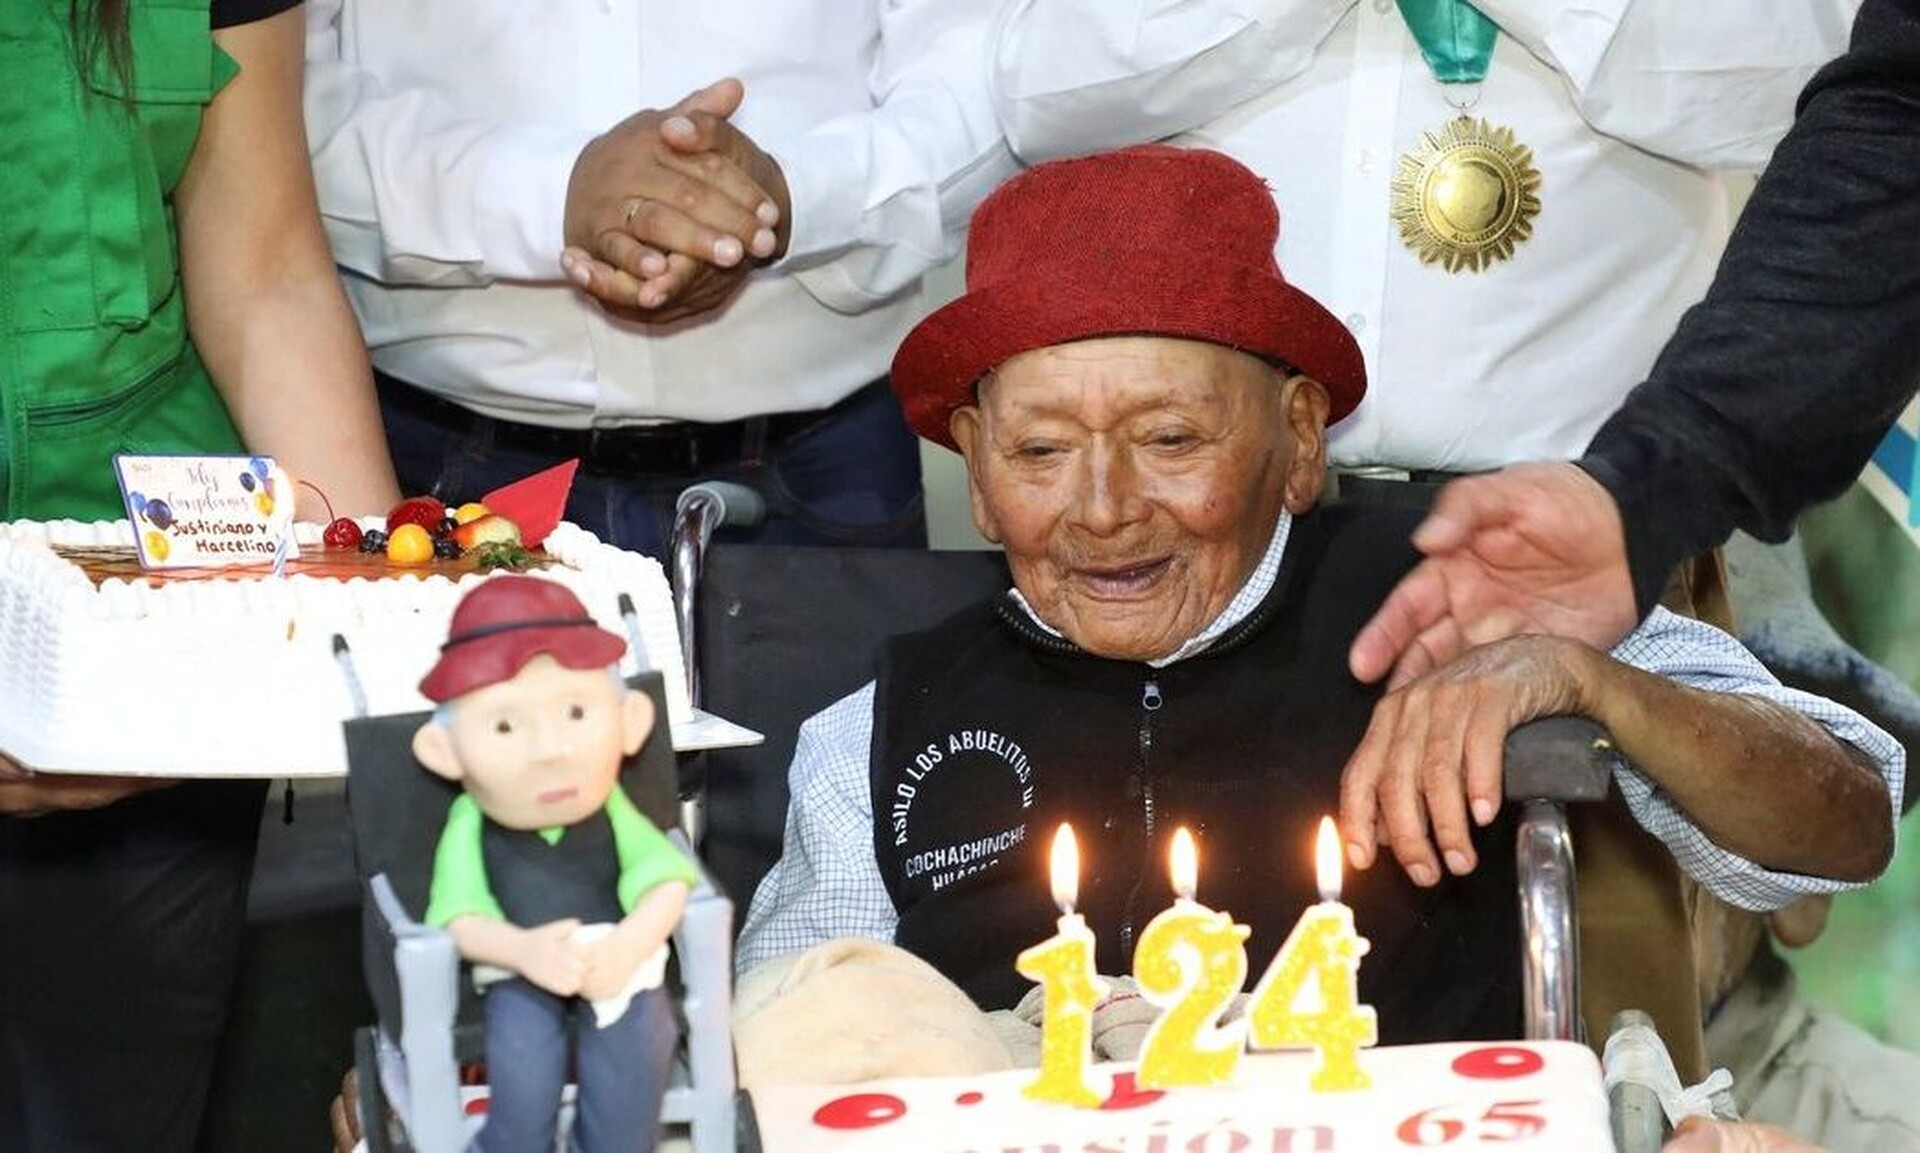 Περού: Είναι 124 ετών και διεκδικεί τον τίτλο του γηραιότερου ανθρώπου στον κόσμο